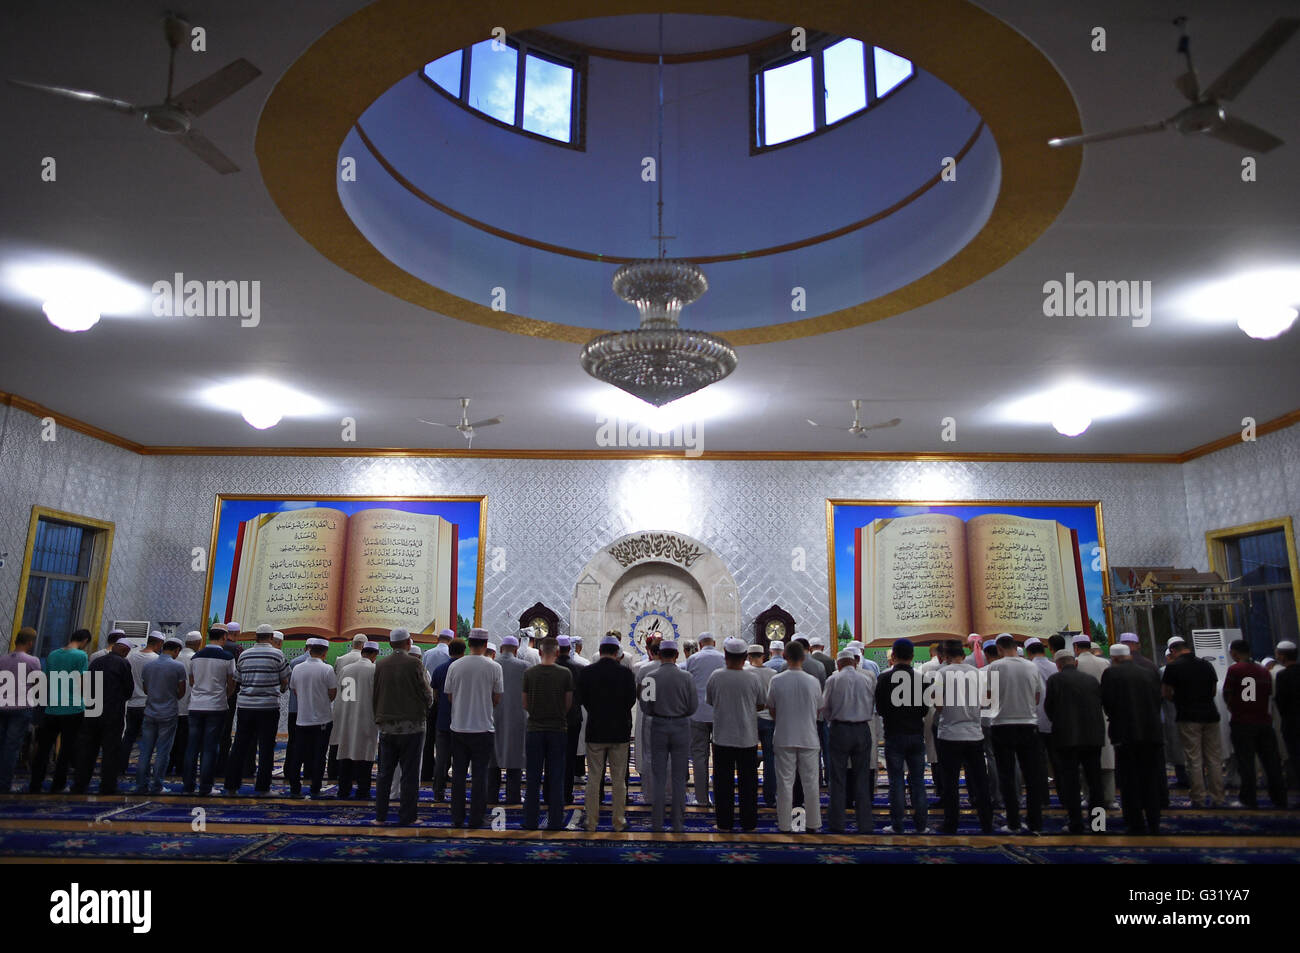 (160606) -- YINCHUAN, le 6 juin 2016 (Xinhua) -- Les musulmans prient le premier jour du Ramadan à Yinchuan, capitale de la Chine du nord-ouest de la région autonome du Ningxia Hui, le 6 juin 2016. (Xinhua/Wang Peng) (ZHS) Banque D'Images